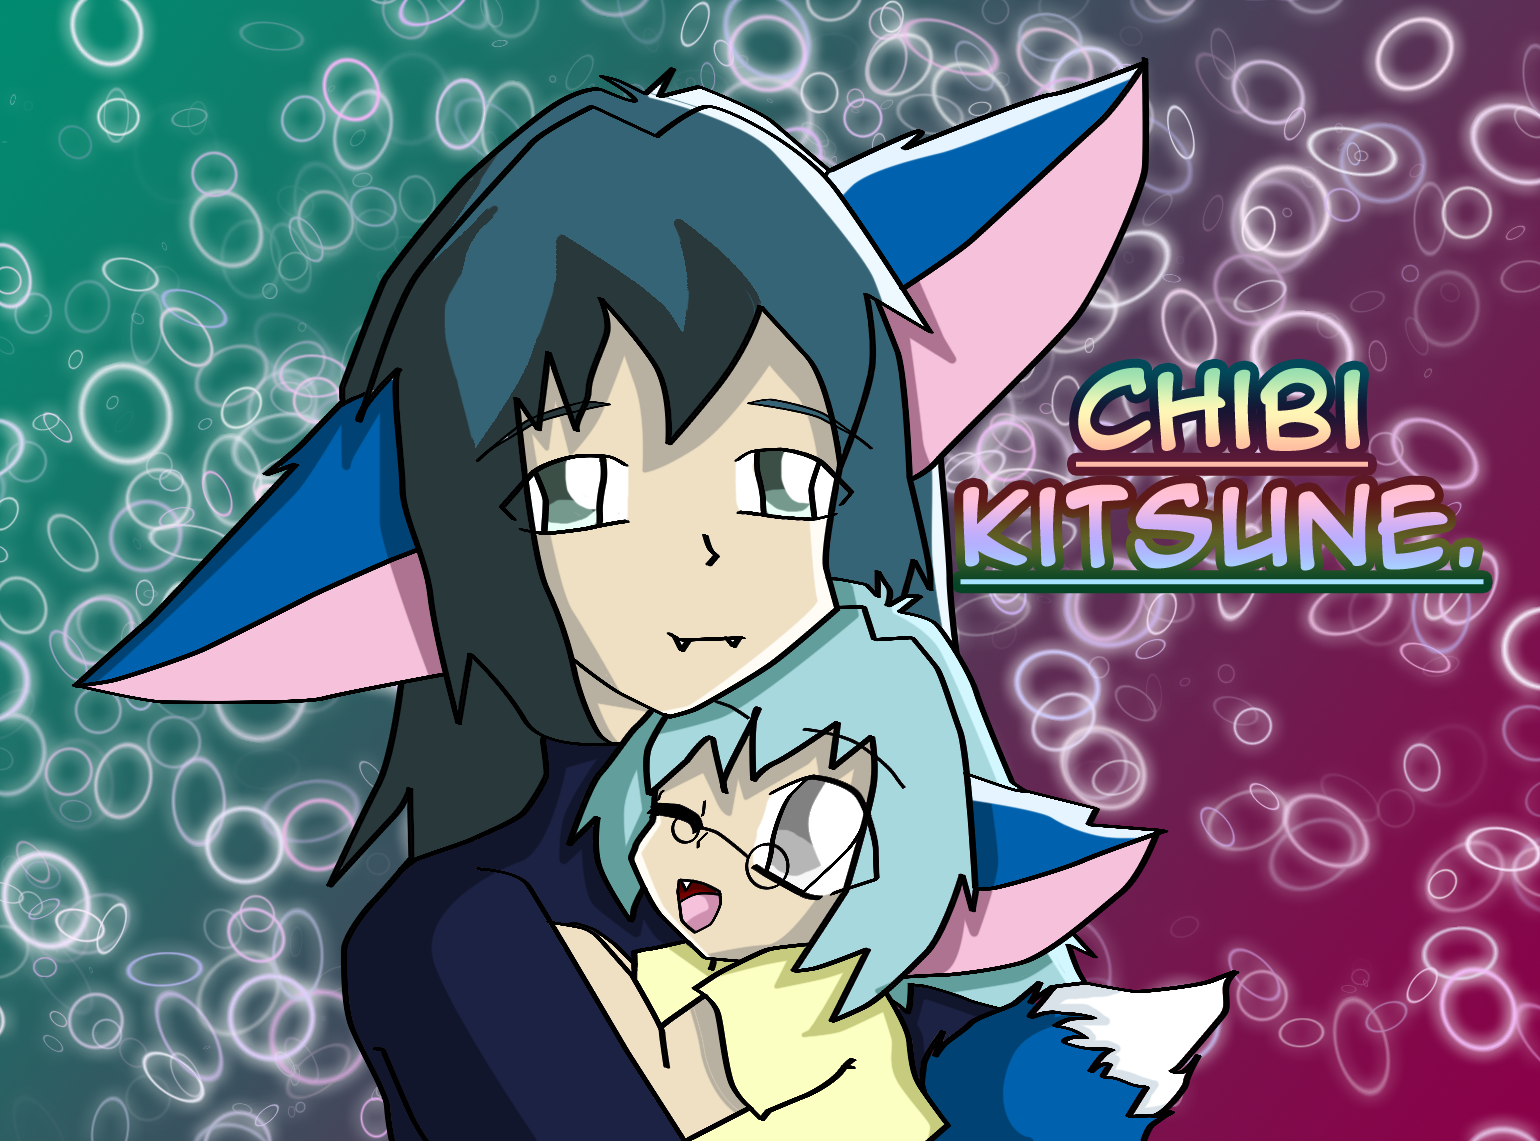 Chibi Kitsune by Kafaru